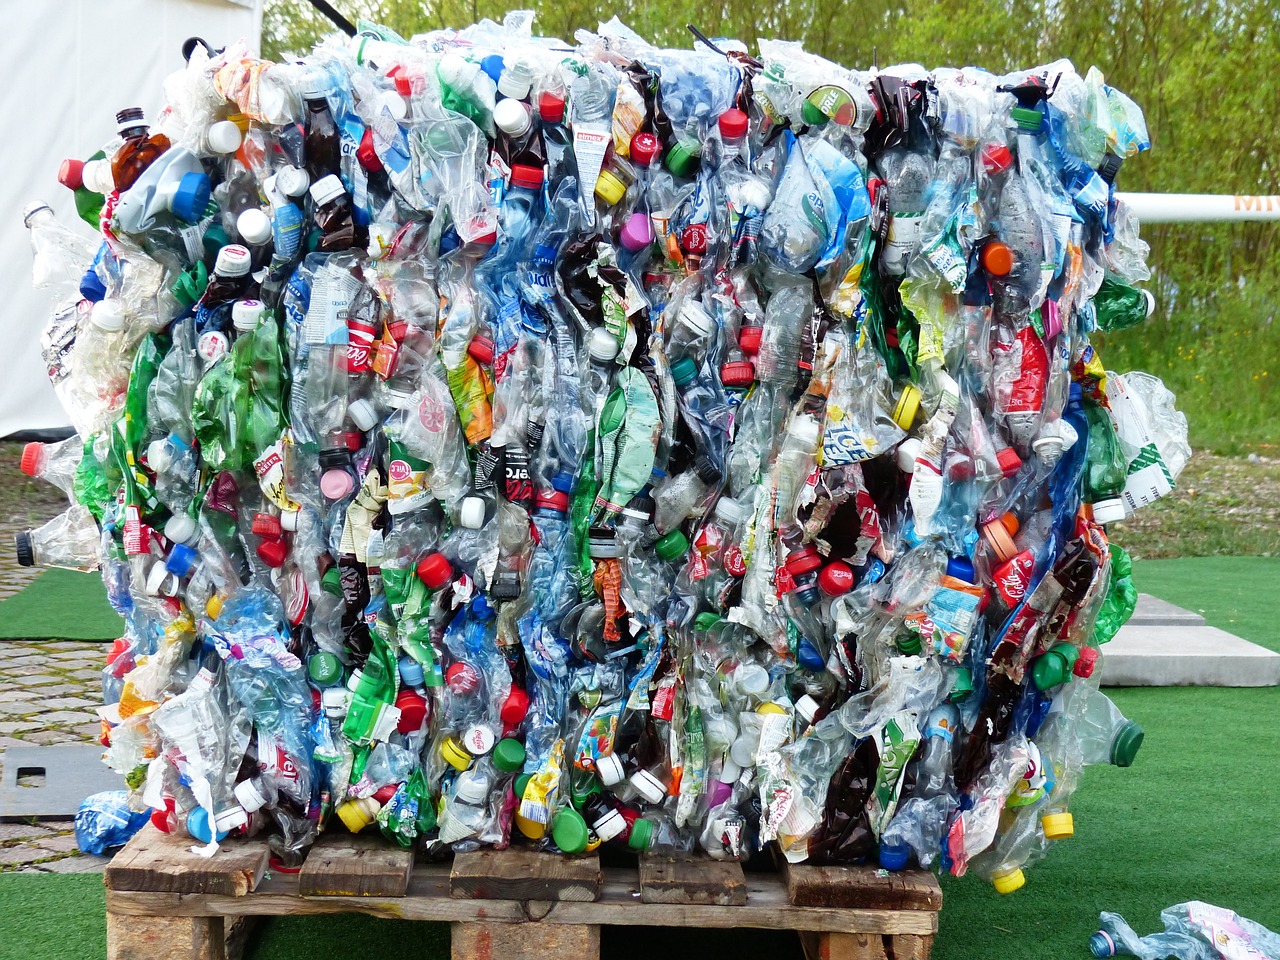 Jakie są trendy w recyklingu dla dzieci? Edukacja ekologiczna od najmłodszych lat